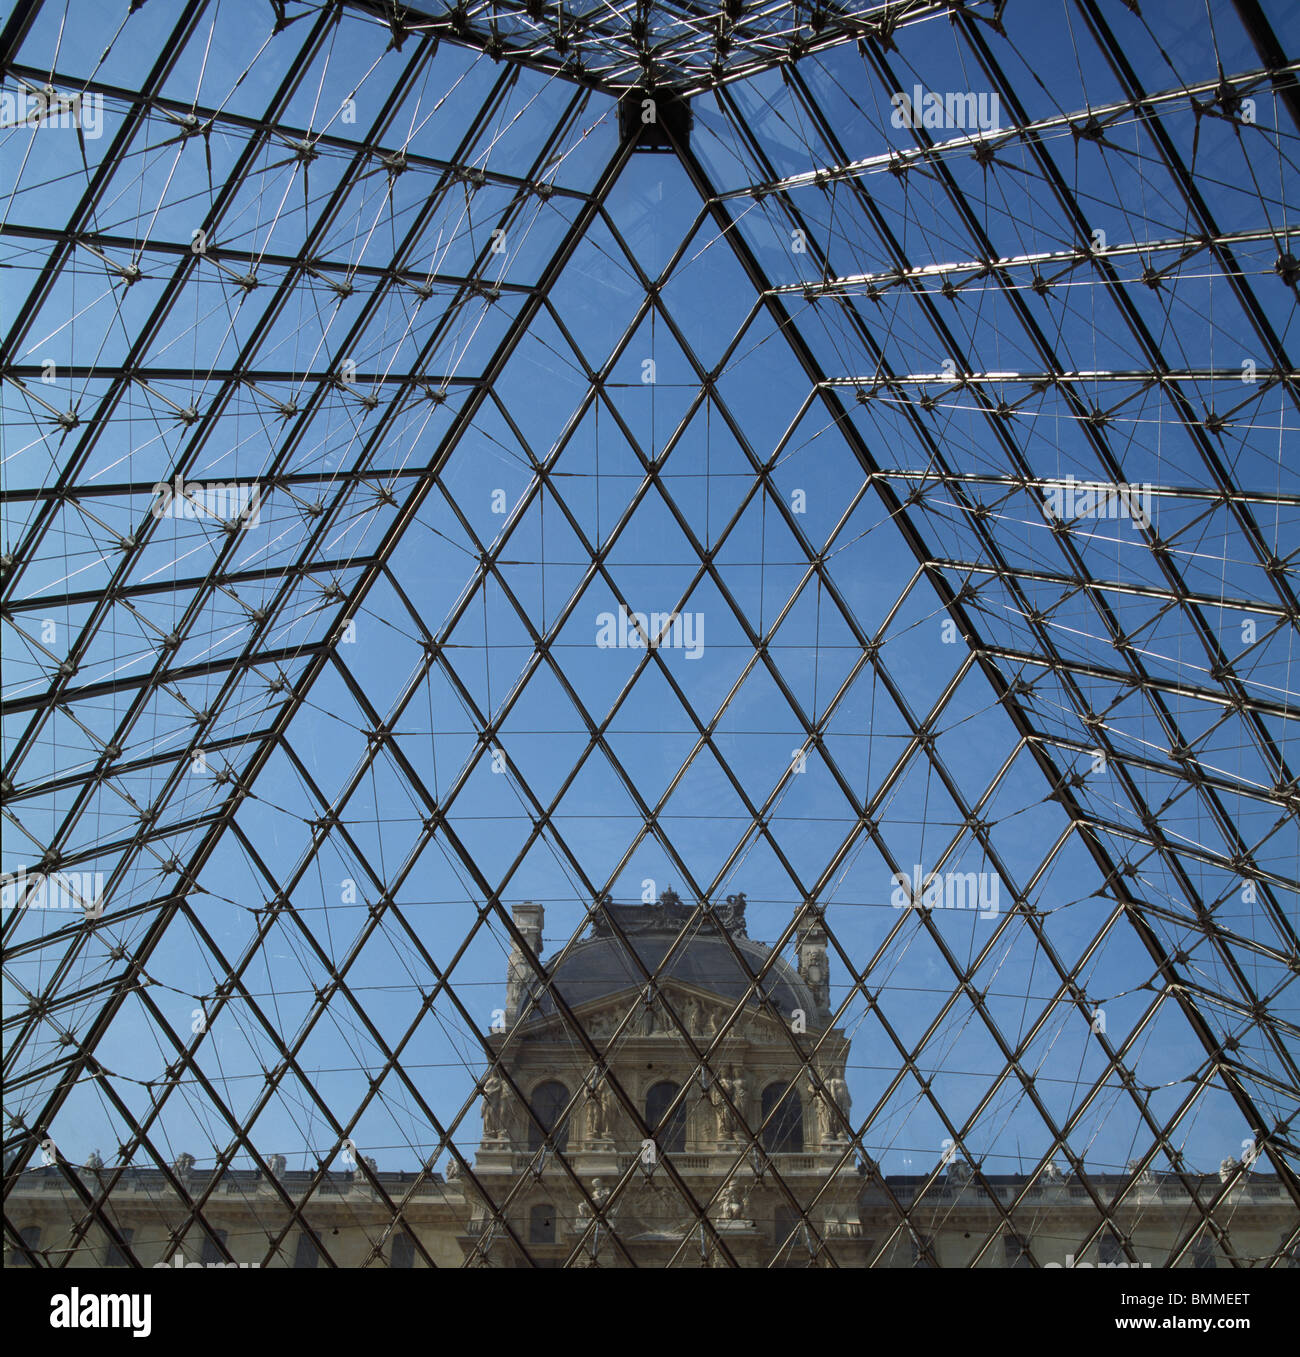 Musée du Louvre, Paris. Pyramide de verre et d'acier, par M. Pei, 1988 avec pavillon Denon derrière. Banque D'Images